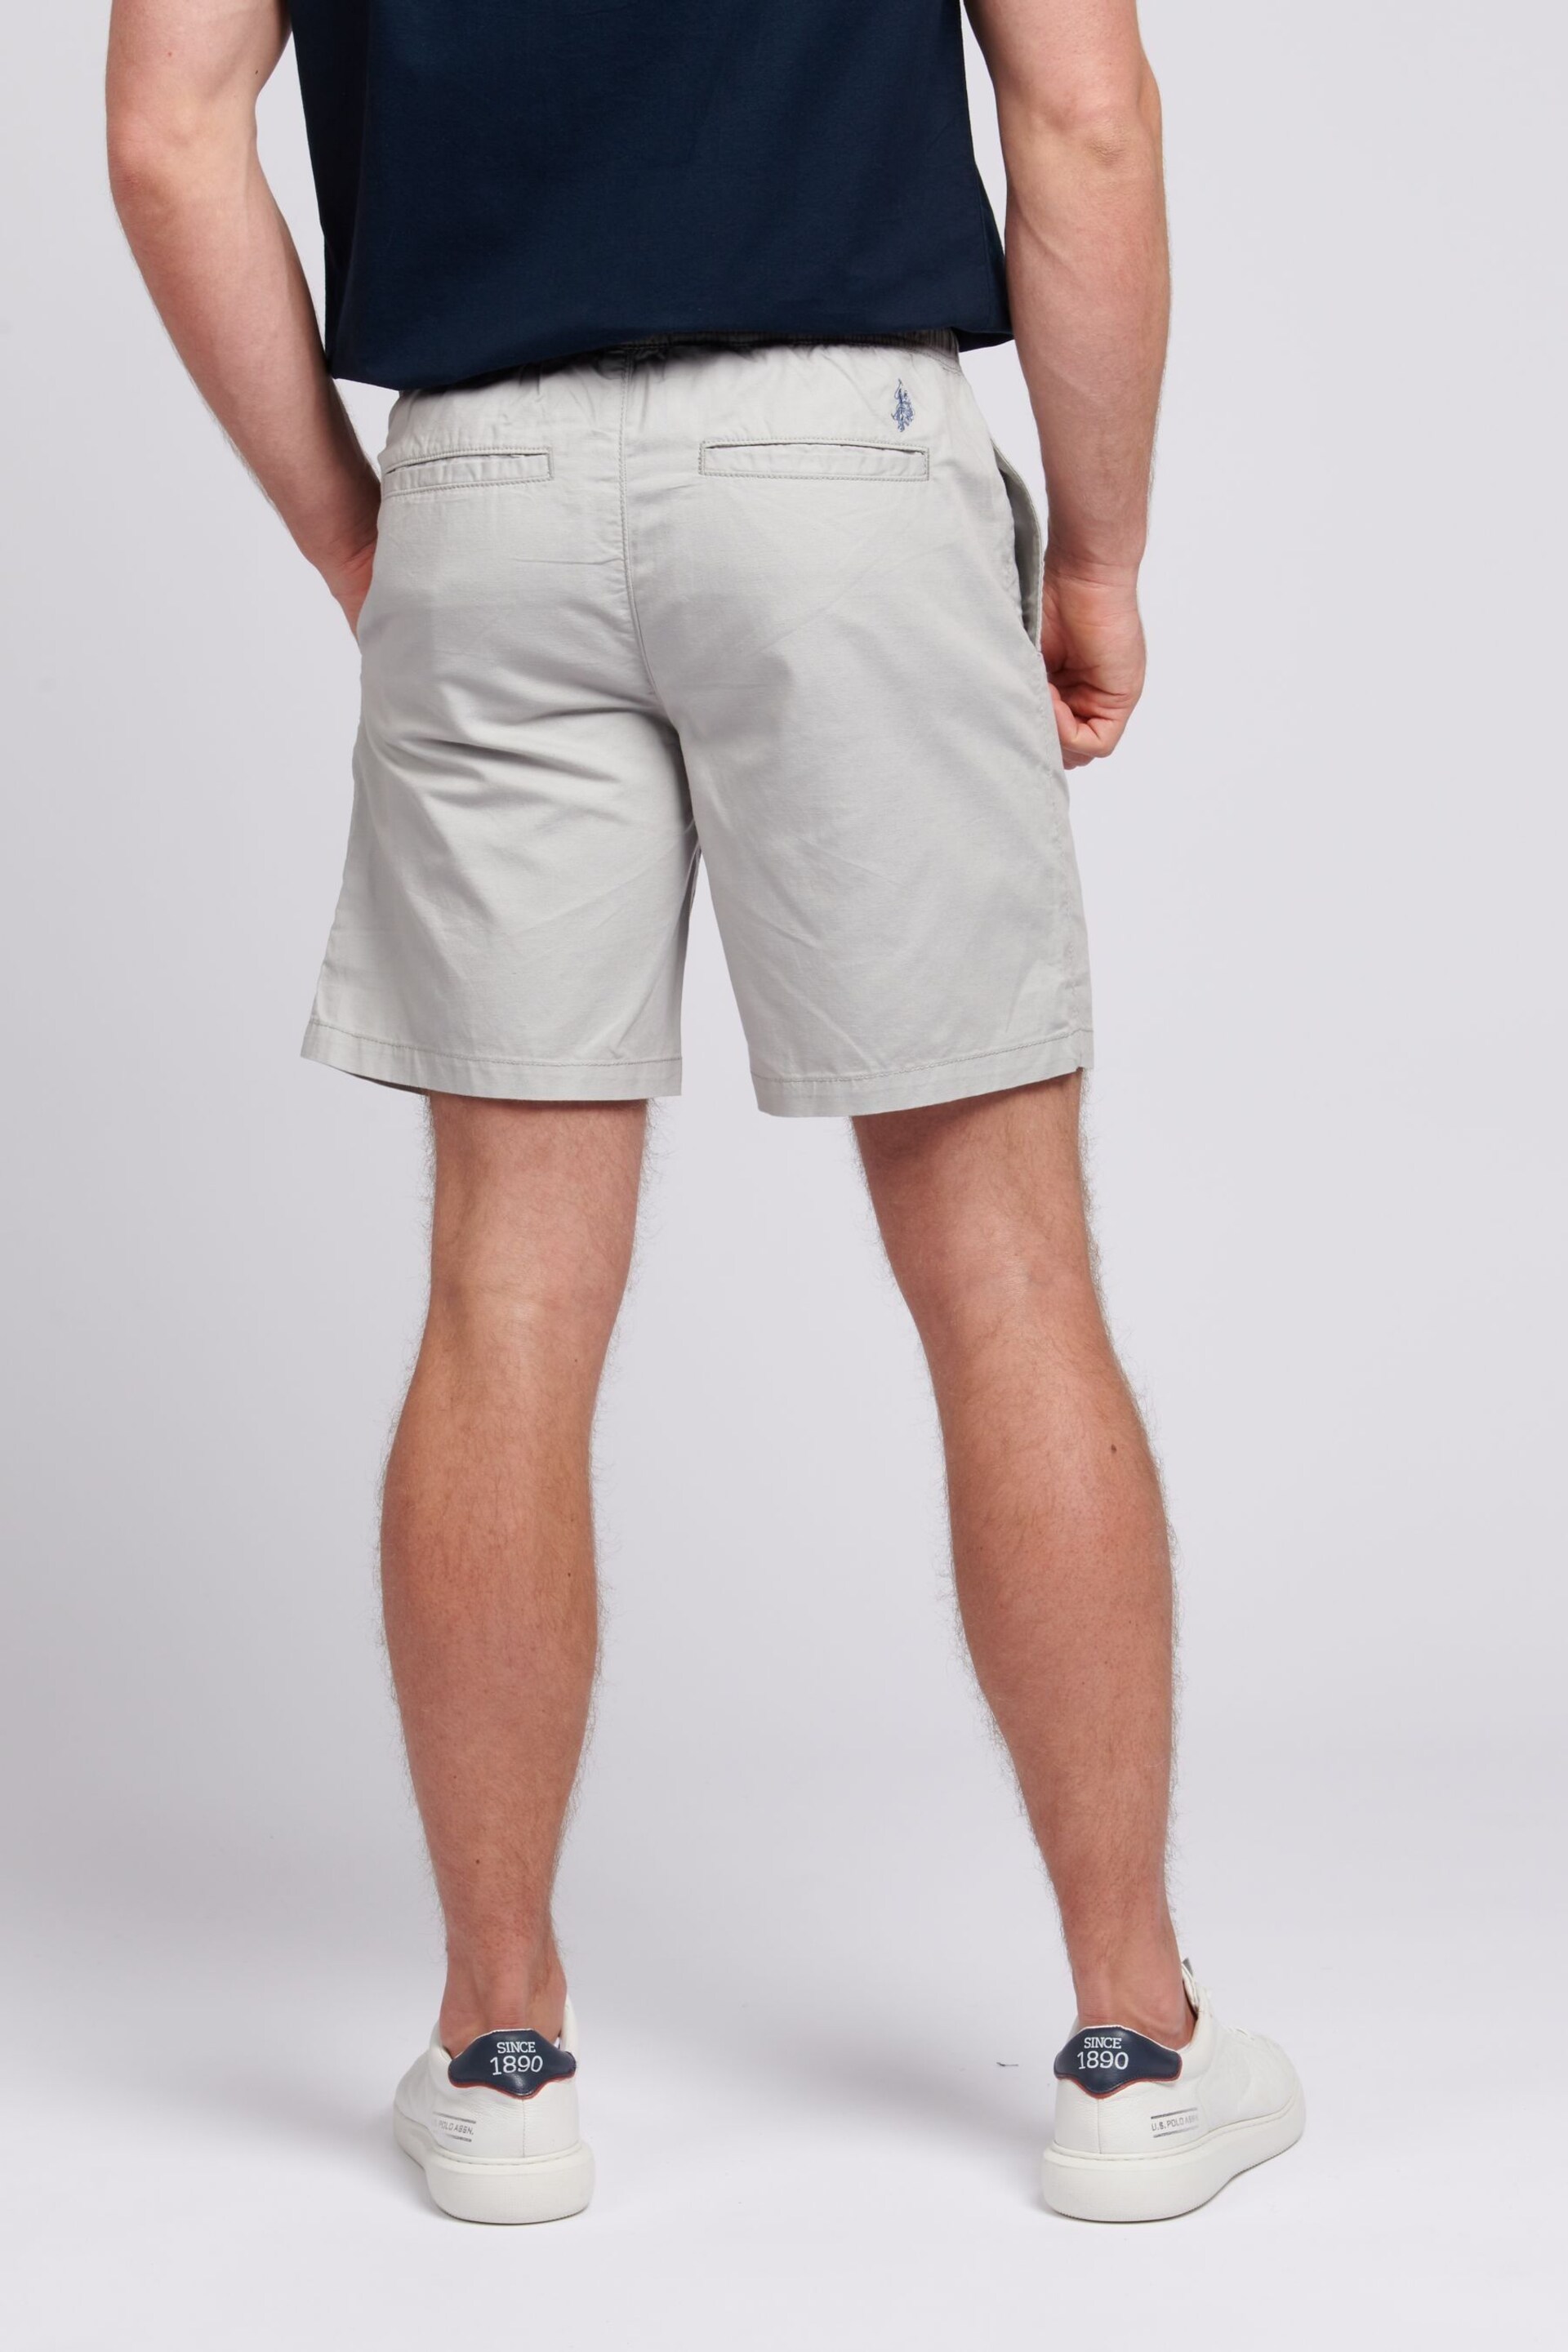 U.S. Polo Assn. Mens Grey Linen Blend Deck Shorts - Image 2 of 6